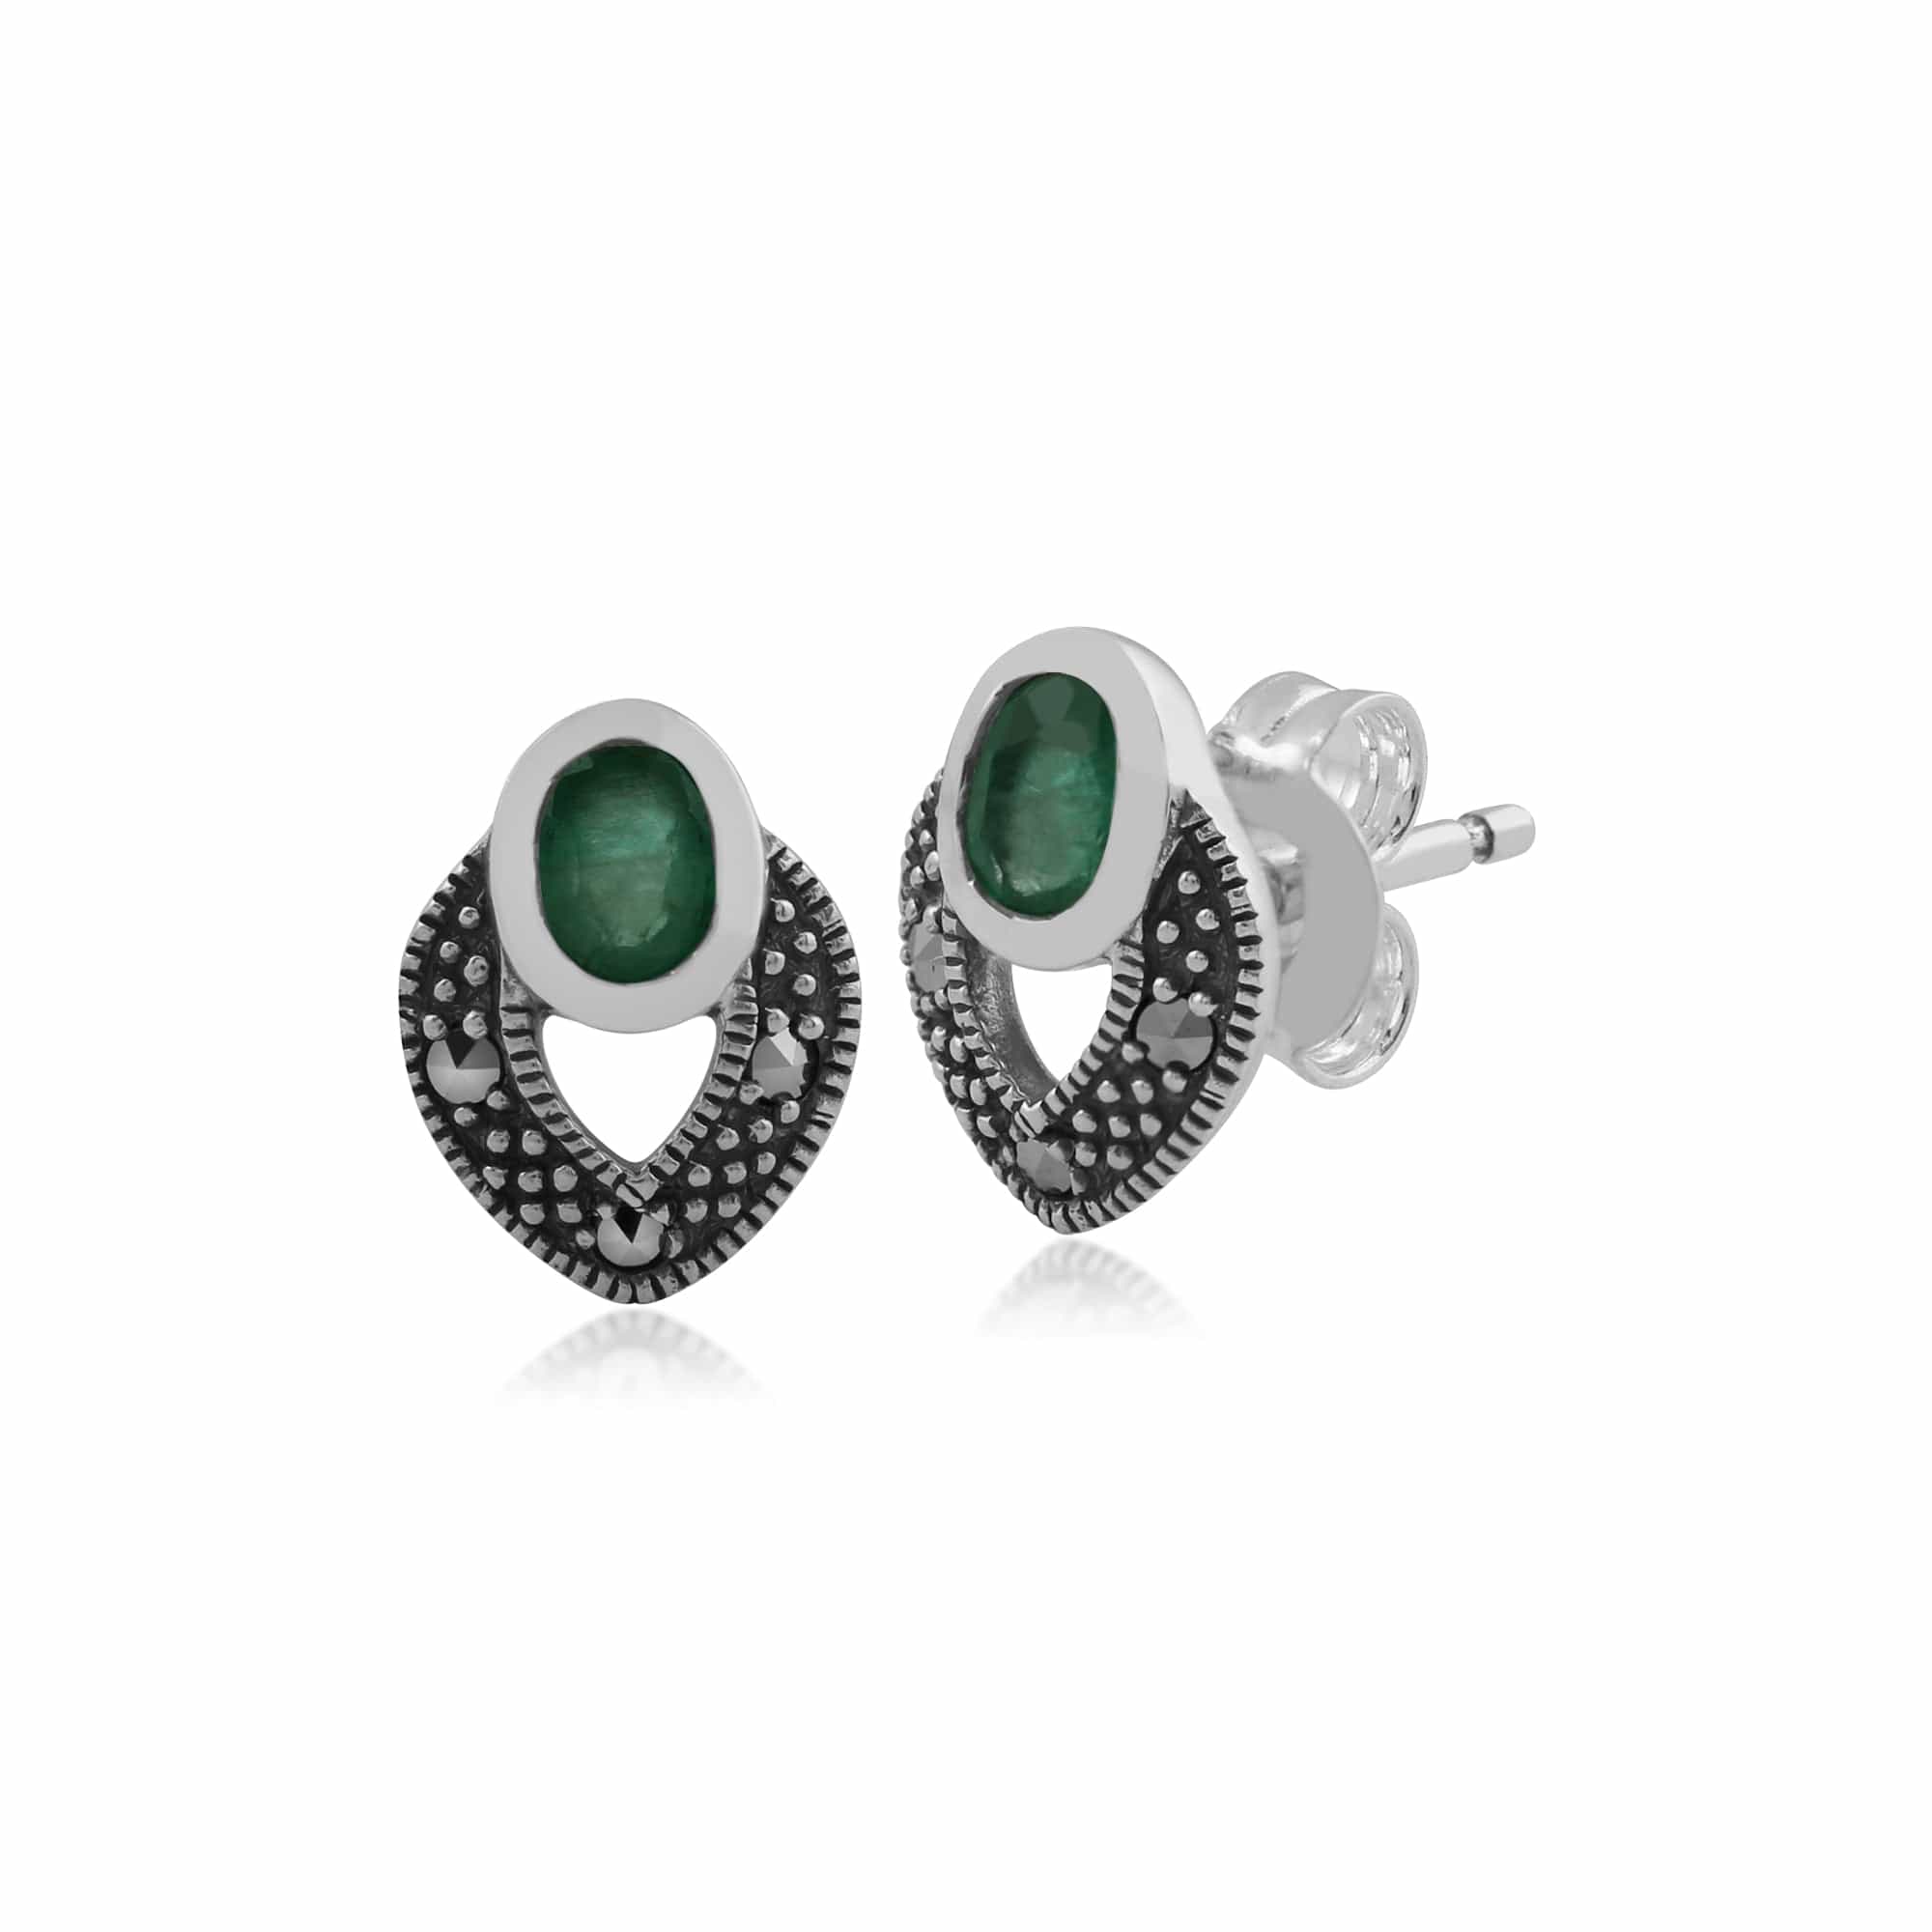 Art Deco Style Oval Emerald & Marcasite Stud Earrings in 925 Sterling Silver - Gemondo